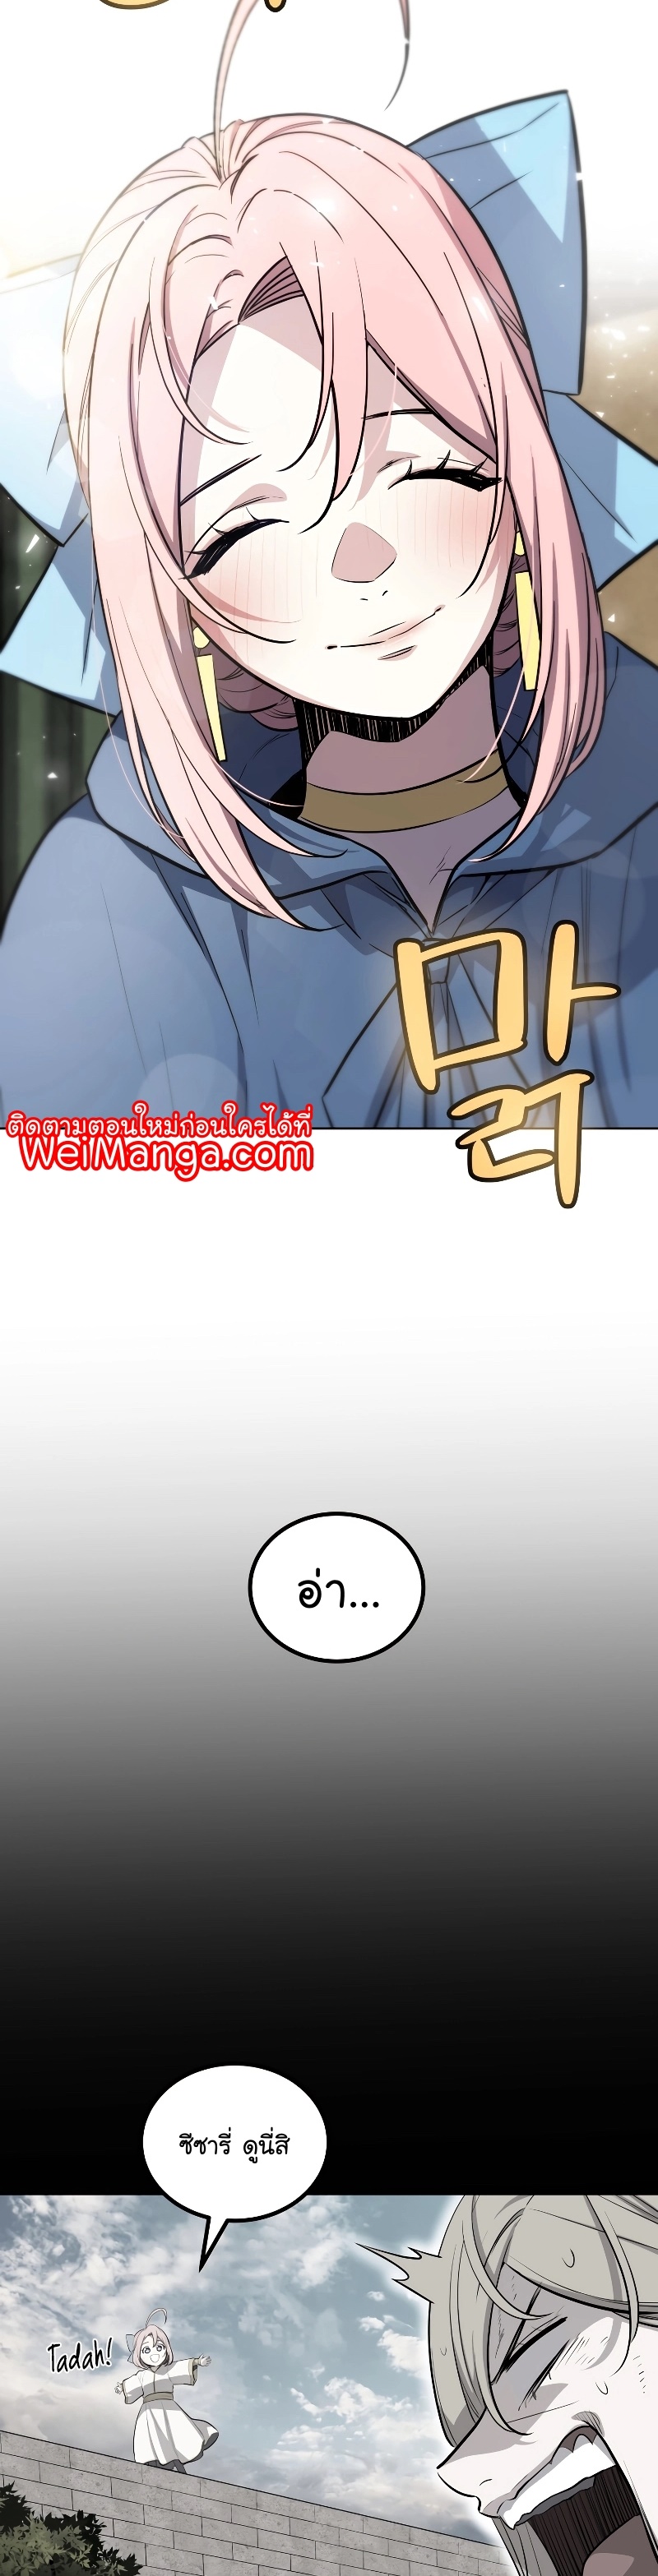 Overpowered Sword Wei Manga Manhwa 91 (7)